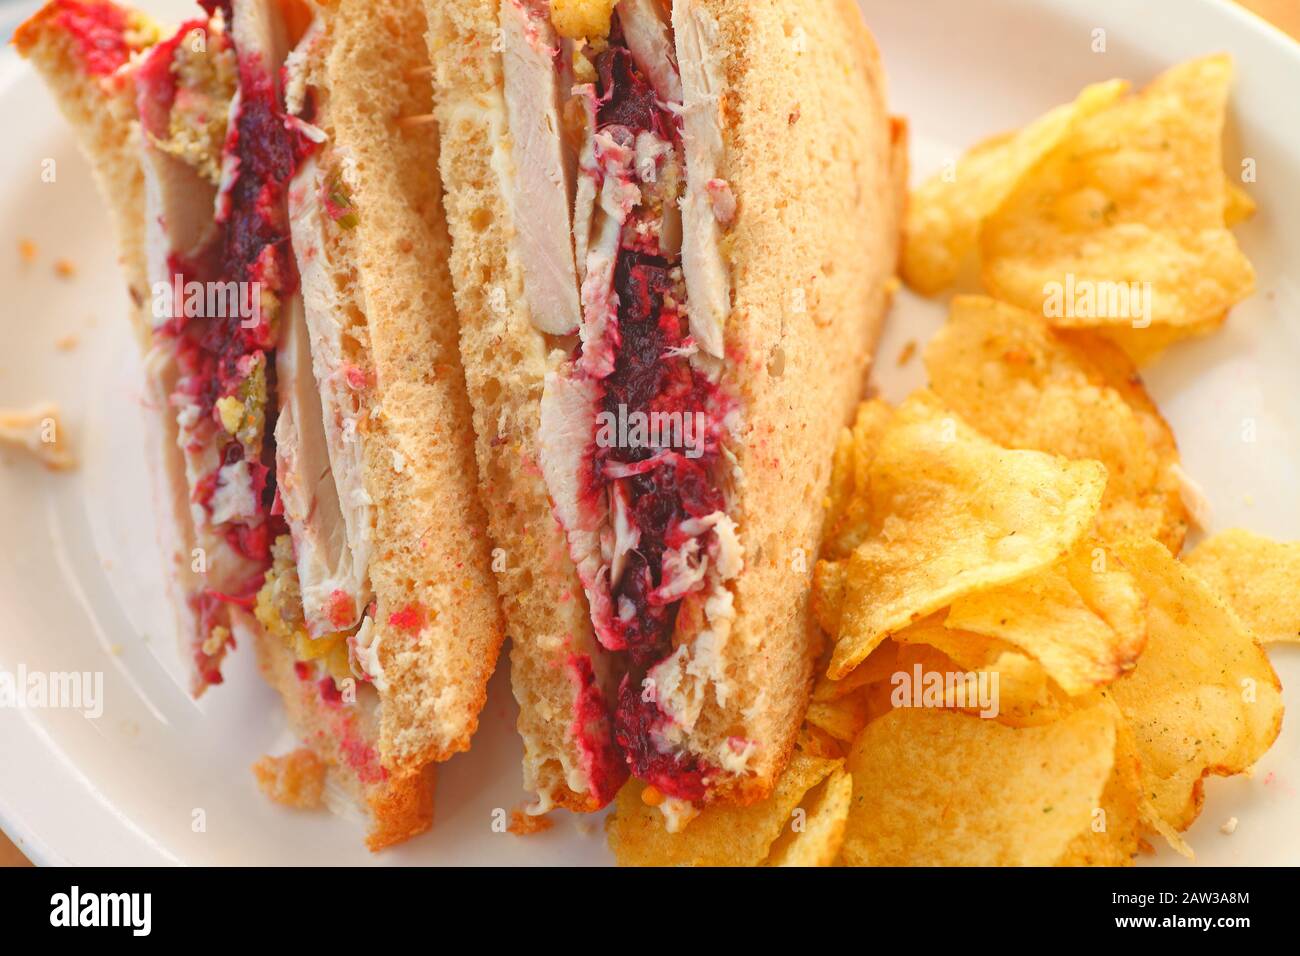 Sandwich made da ringraziamento avanzi di Turchia, salsa di mirtilli e ripieno con ripieno aromatizzato con patate fritte Foto Stock